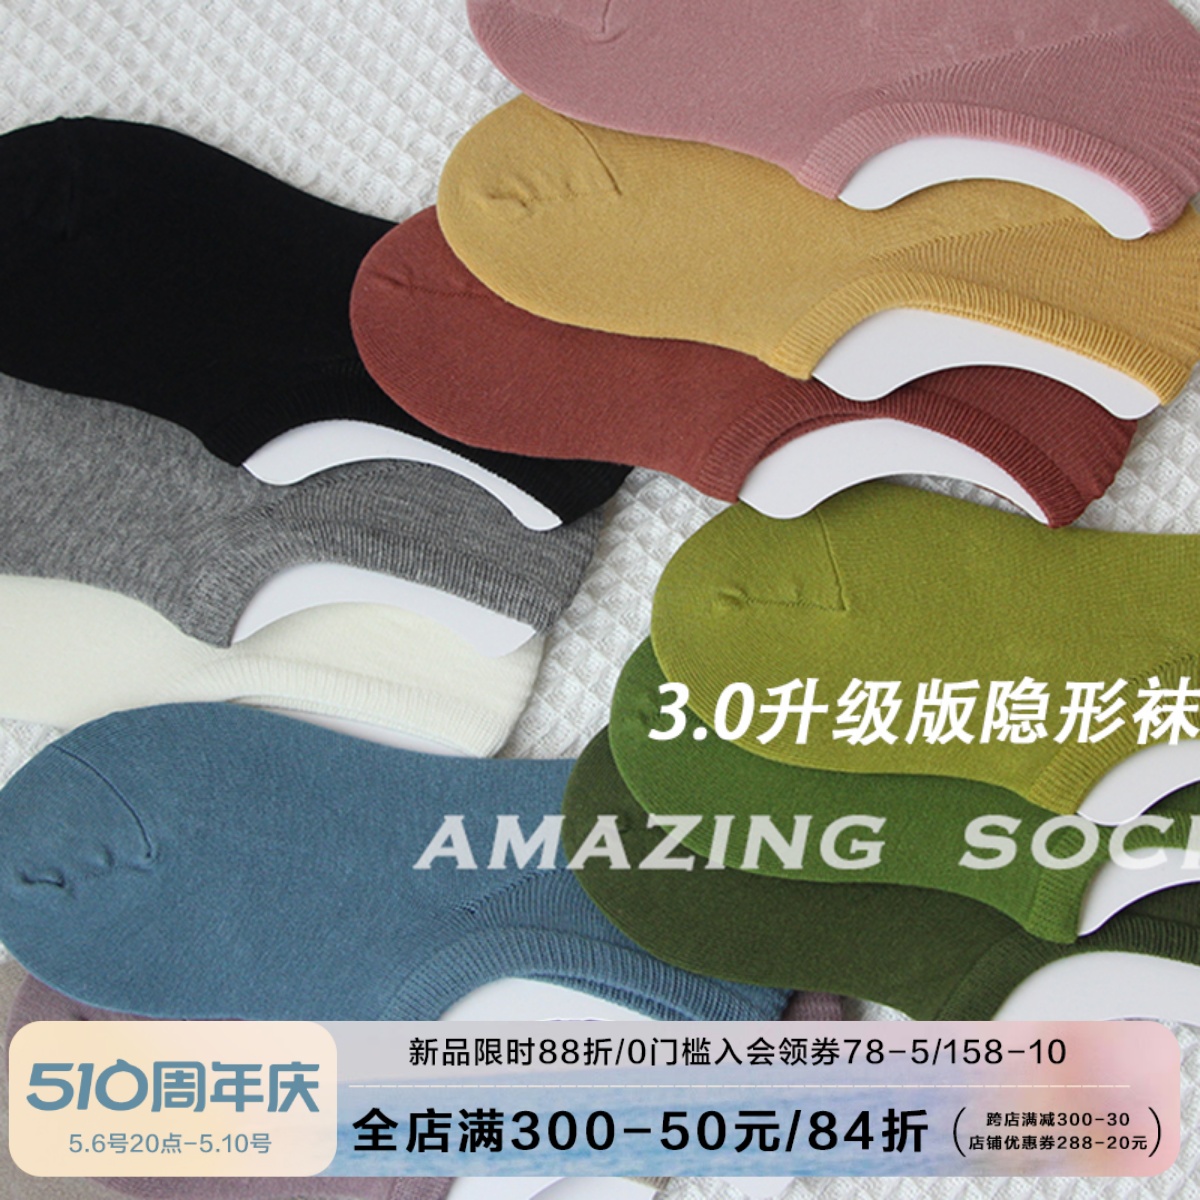 Amazing Socks夏日隐形3.0版本柔软包裹颜色升级全棉透气浅口船袜-封面